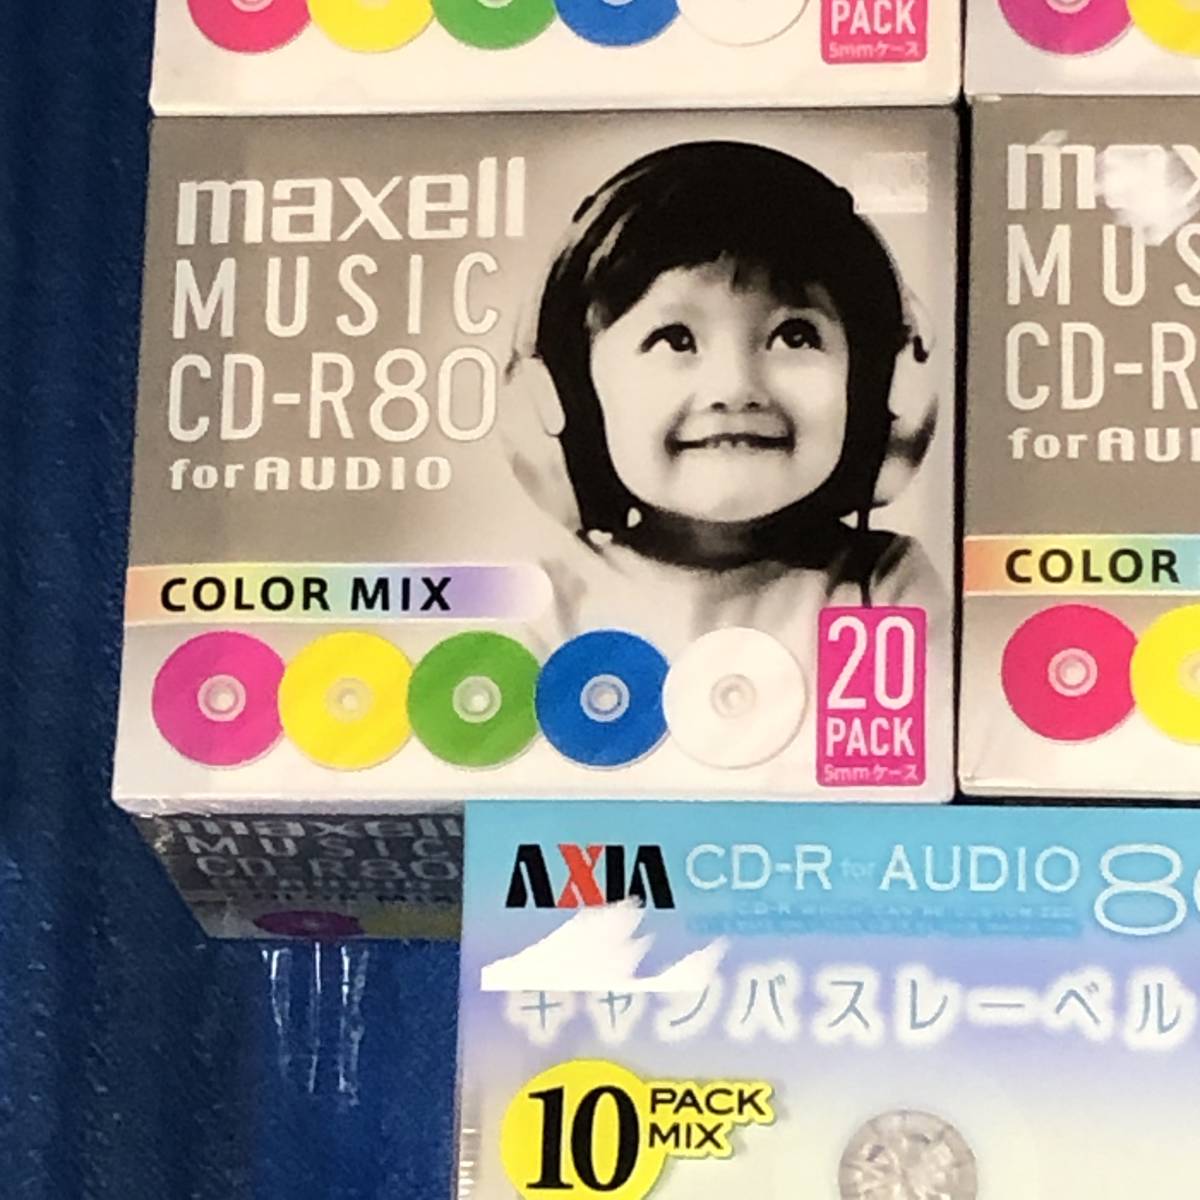 マクセル maxell 音楽用 CD-R 80分 カラーミックス 20枚 5mmケース入 CDRA80MIX.S1P20S5個+その他CD-R25枚セット_画像2